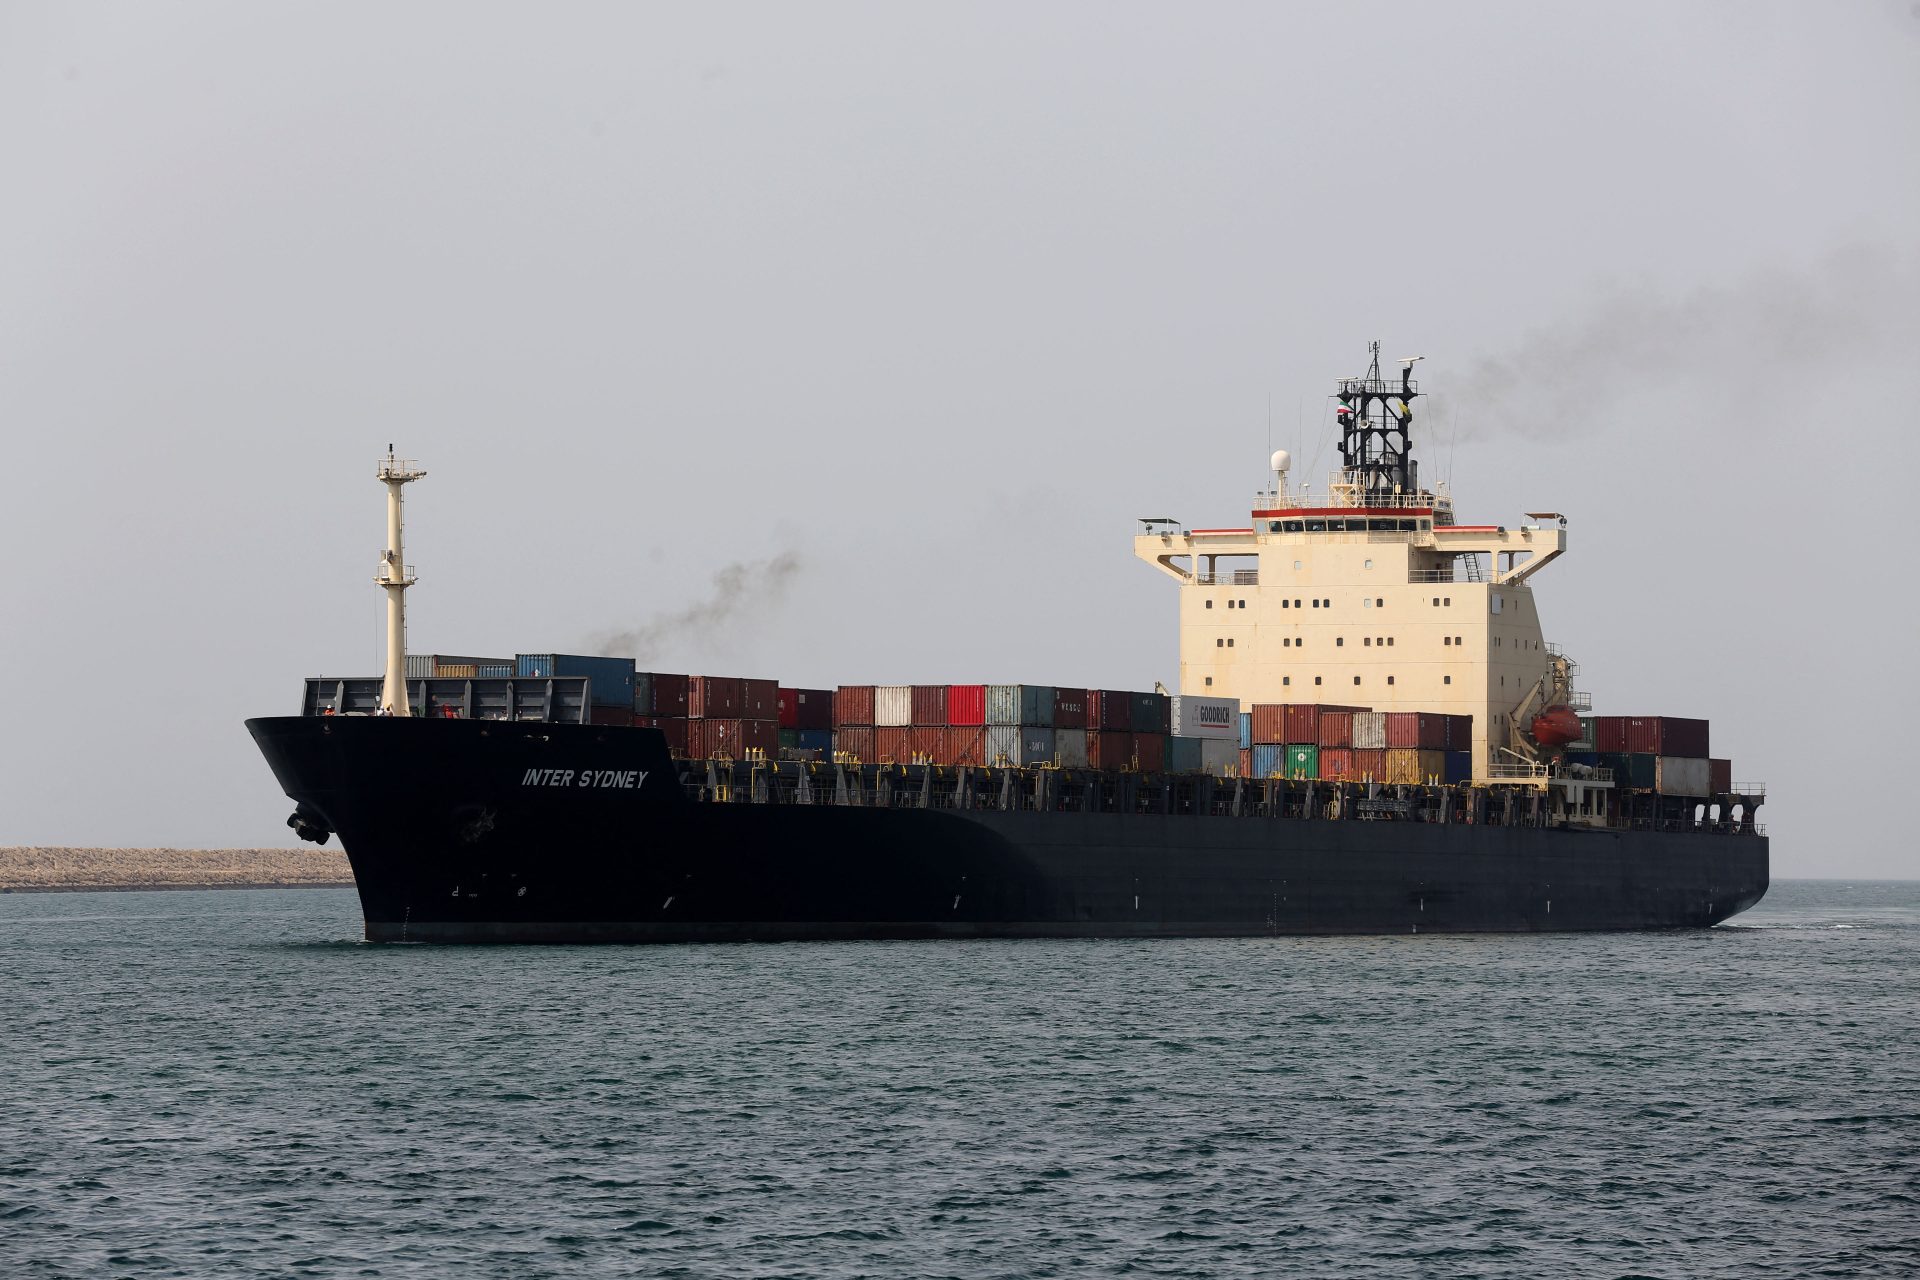 L'Inde signe avec l'Iran pour développer le port de Chabahar malgré l'avertissement des USA